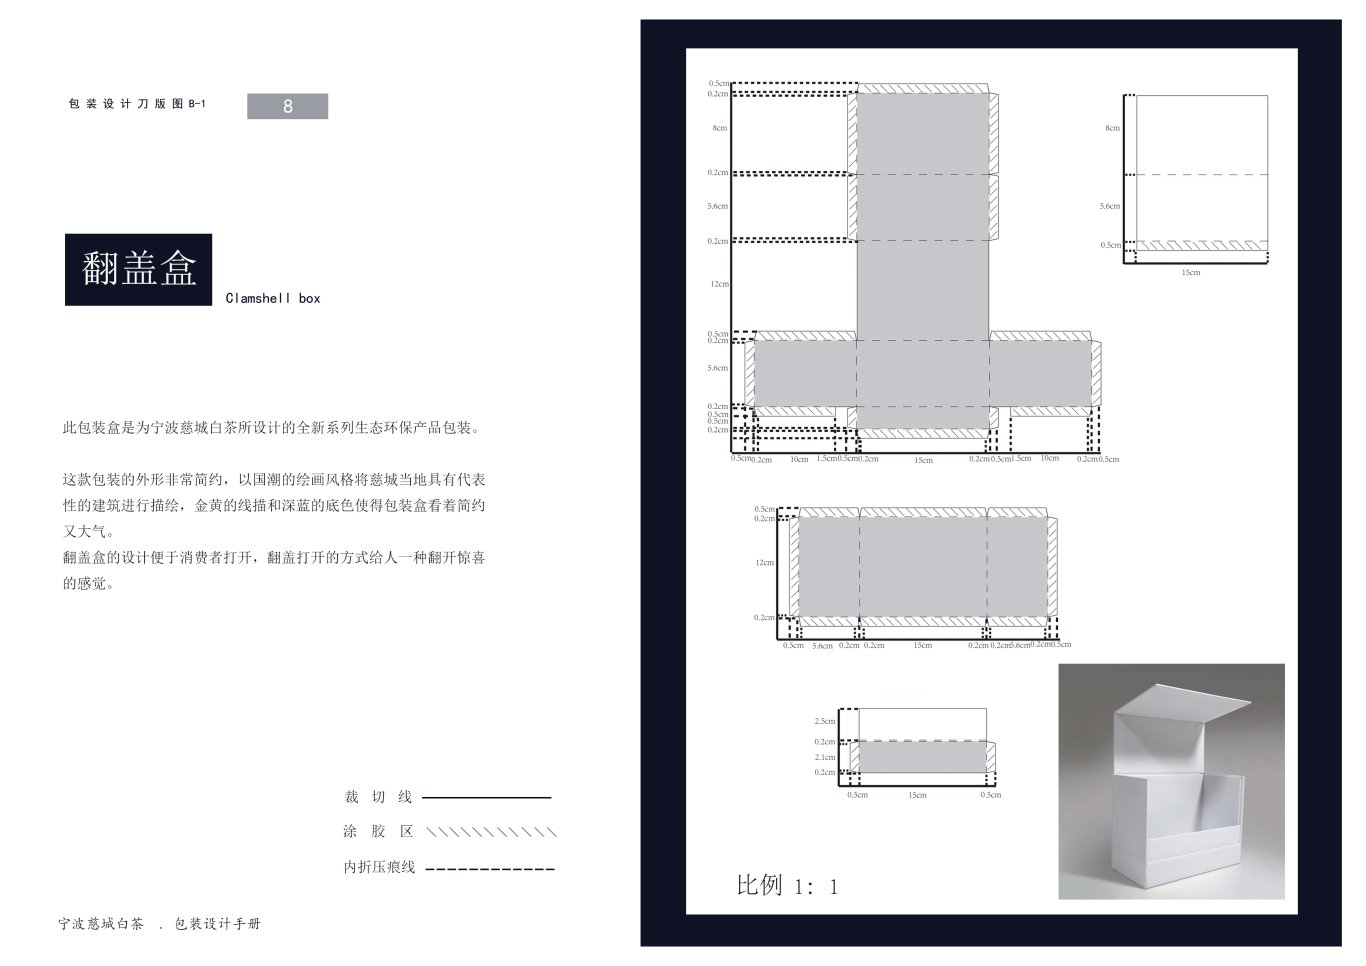 宁波慈城白茶包装设计图8